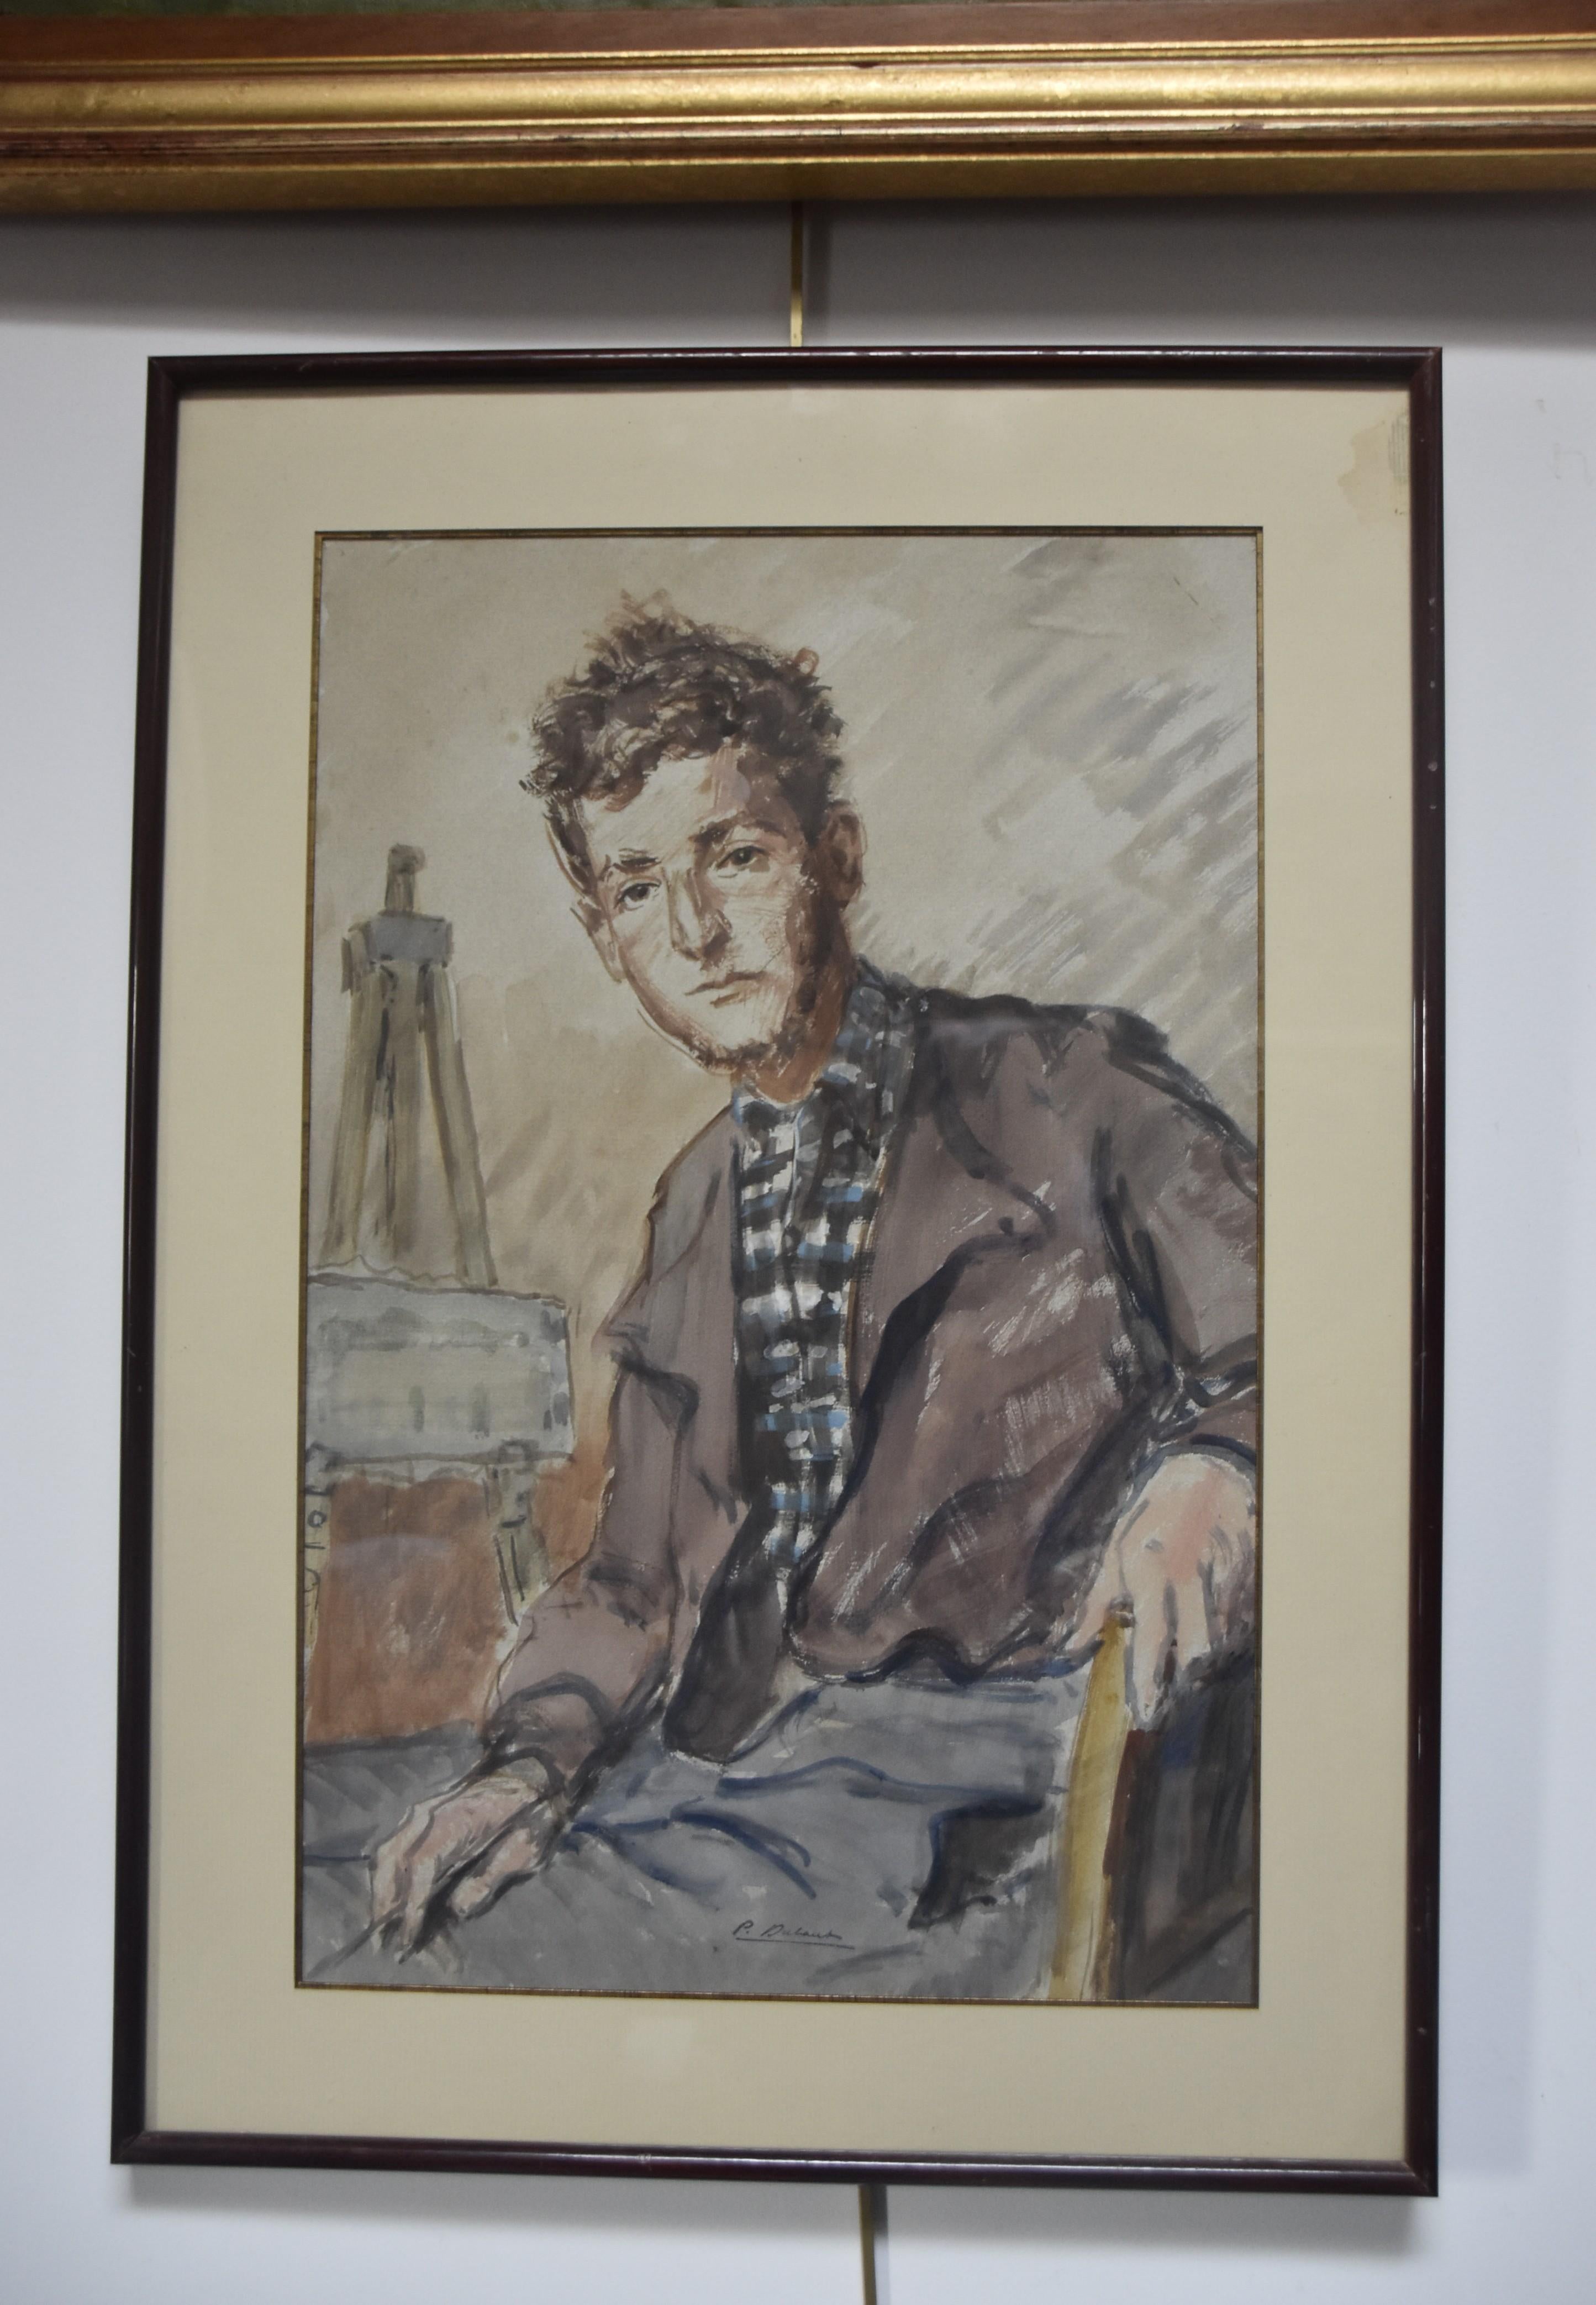 Pierre Olivier Dubaut (1886-1968) 
Portrait d'un artiste
Cachet de l'artiste sur la partie inférieure
aquarelle sur papier
46.5 x 30 cm

Dans un cadre vintage : 58 x 42 cm, quelques dommages dans le passe-partout en haut à droite, voir photo de